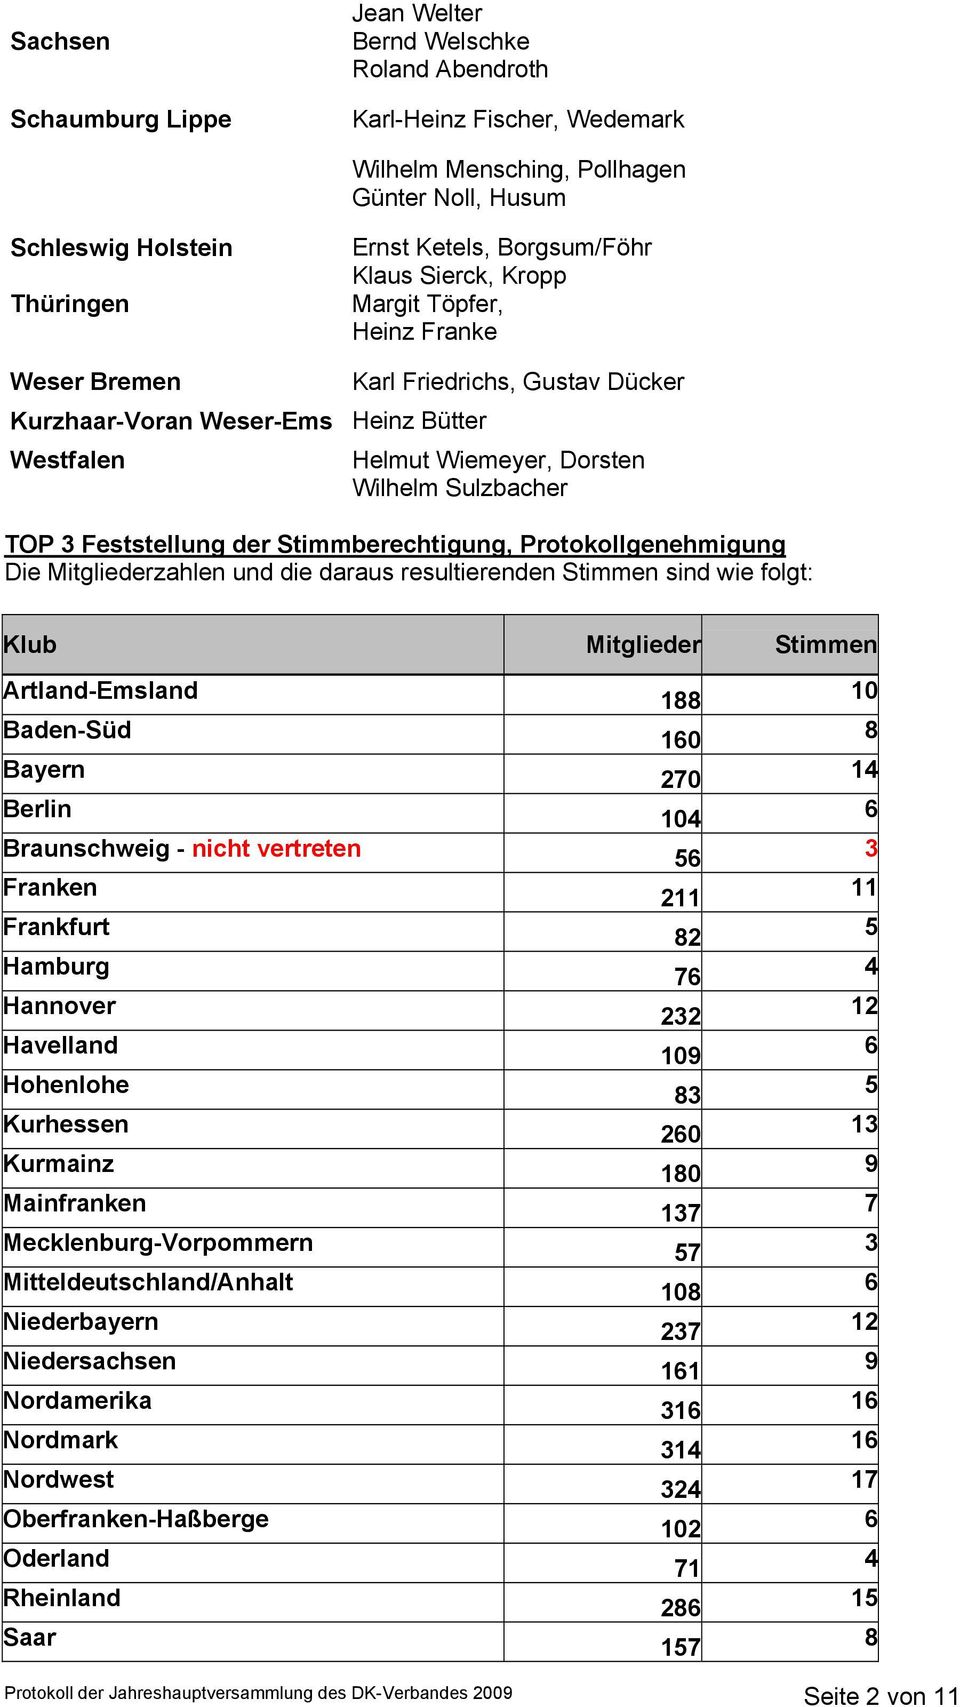 TOP 3 Feststellung der Stimmberechtigung, Protokollgenehmigung Die Mitgliederzahlen und die daraus resultierenden Stimmen sind wie folgt: Klub Mitglieder Stimmen Artland-Emsland Baden-Süd Bayern